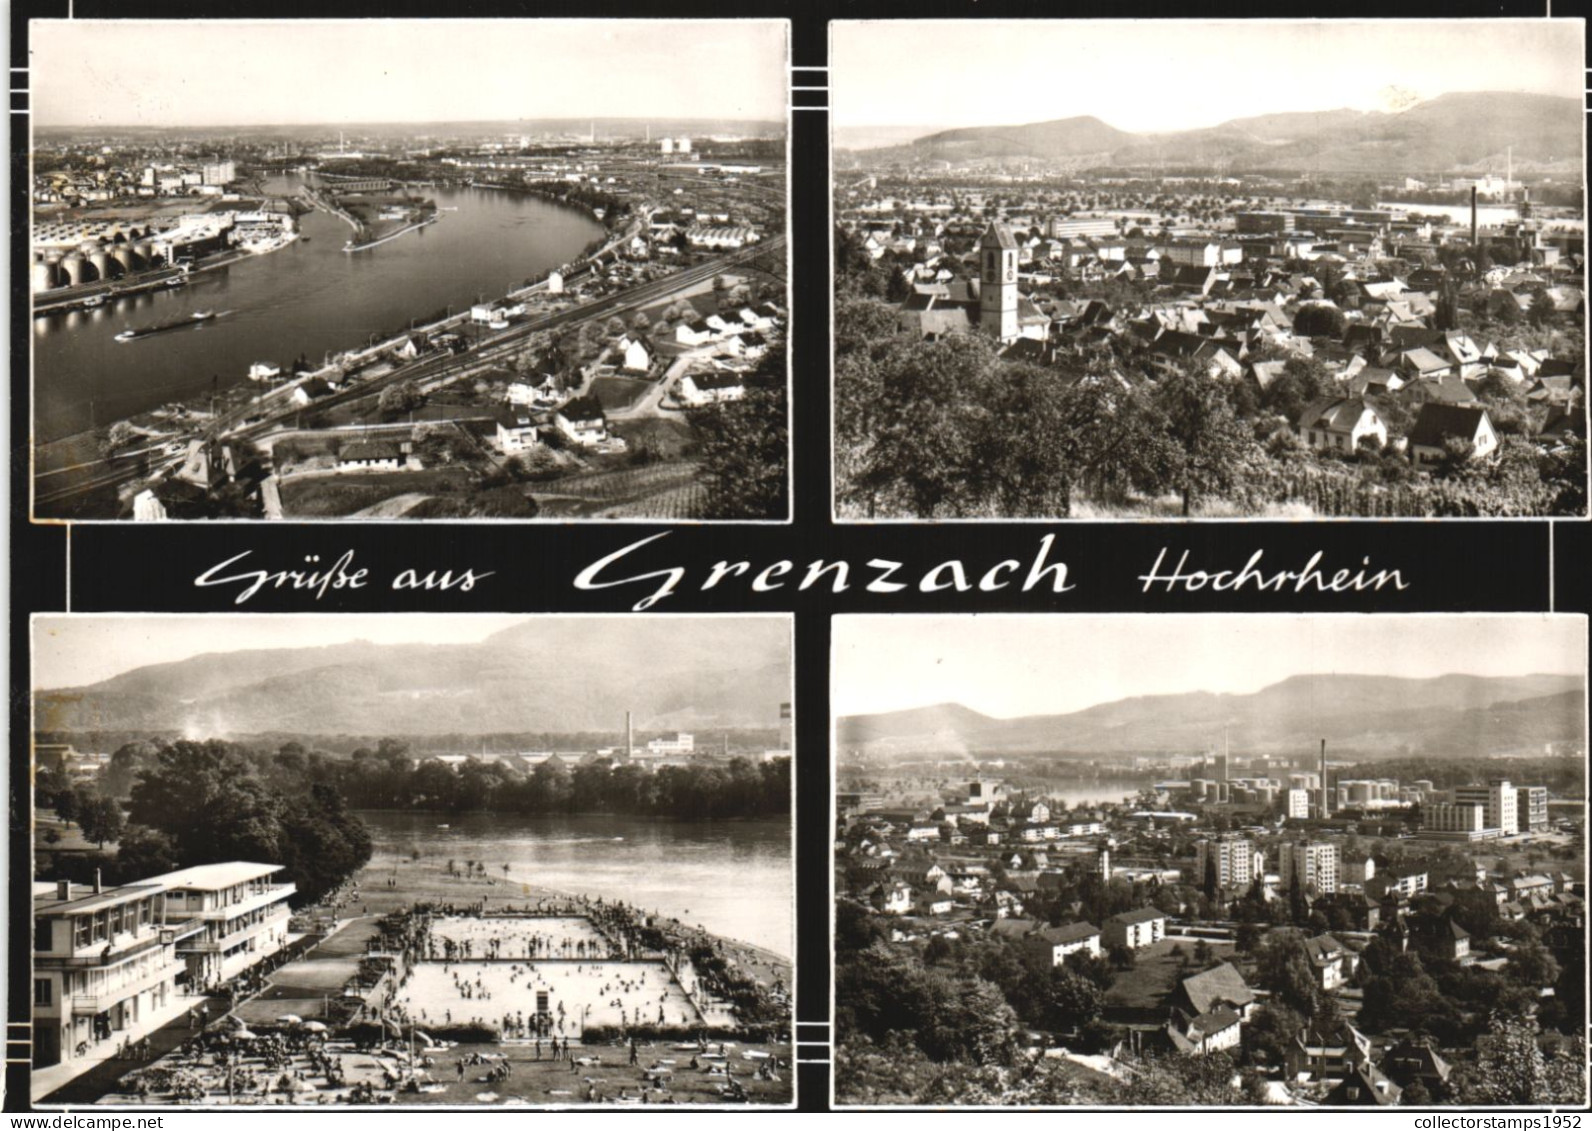 GRENZACH WYHLEN, MULTIPLE VIEWS, ARCHITECTURE, BEACH, SHIP, GERMANY - Grenzach-Whylen